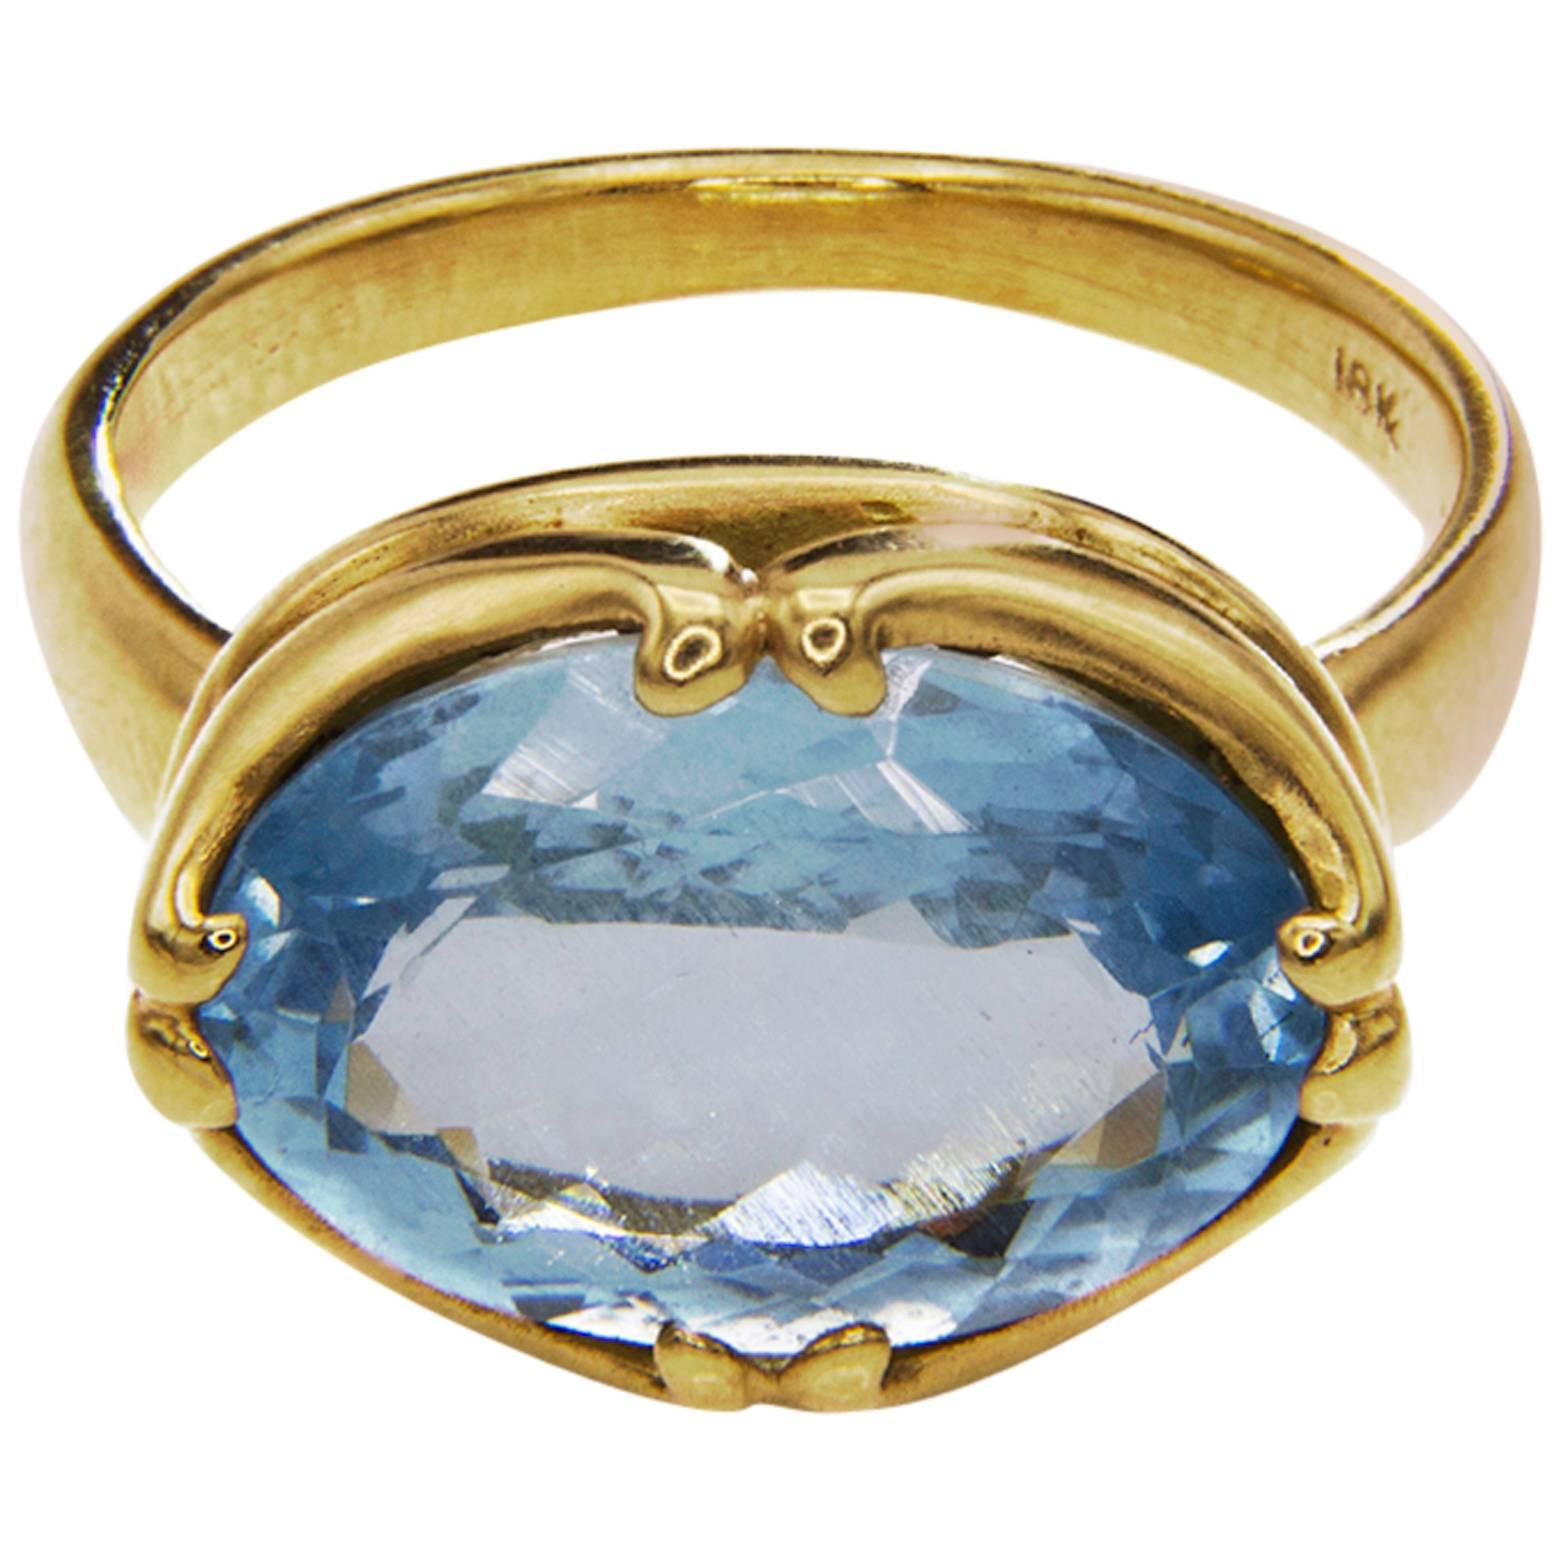 Large Oval Aquamarine Gold Ring Byzantine Style